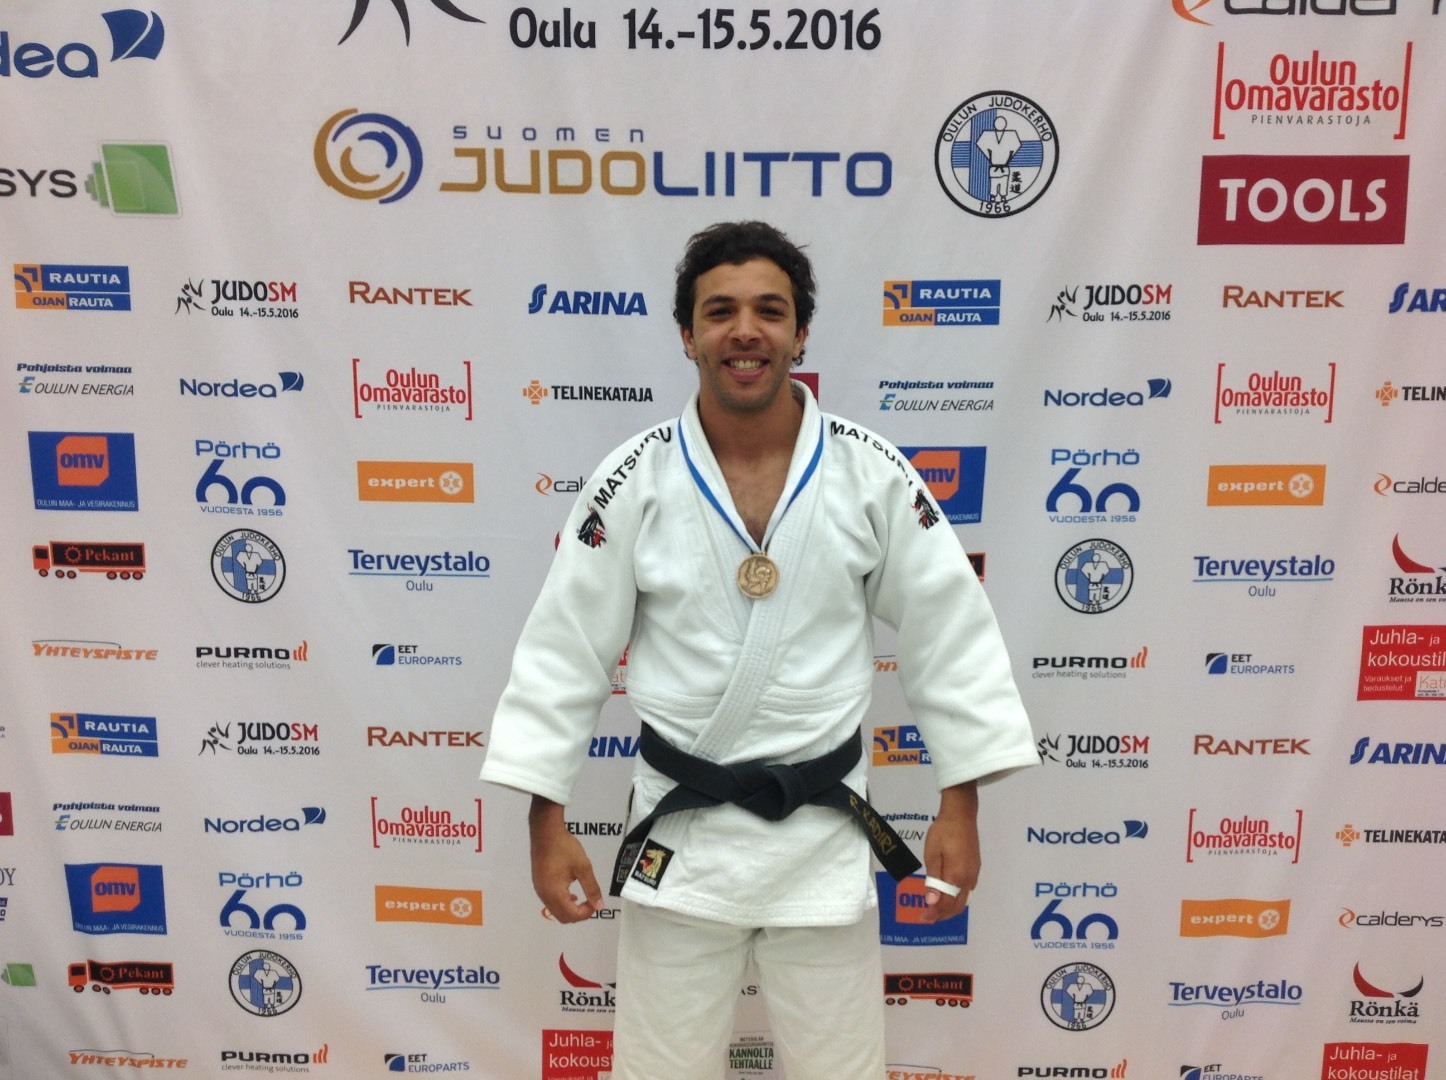 Rachid El Kadiri toi KP-V:lle ensimmäisen aikuisten Judon SM -mitalin